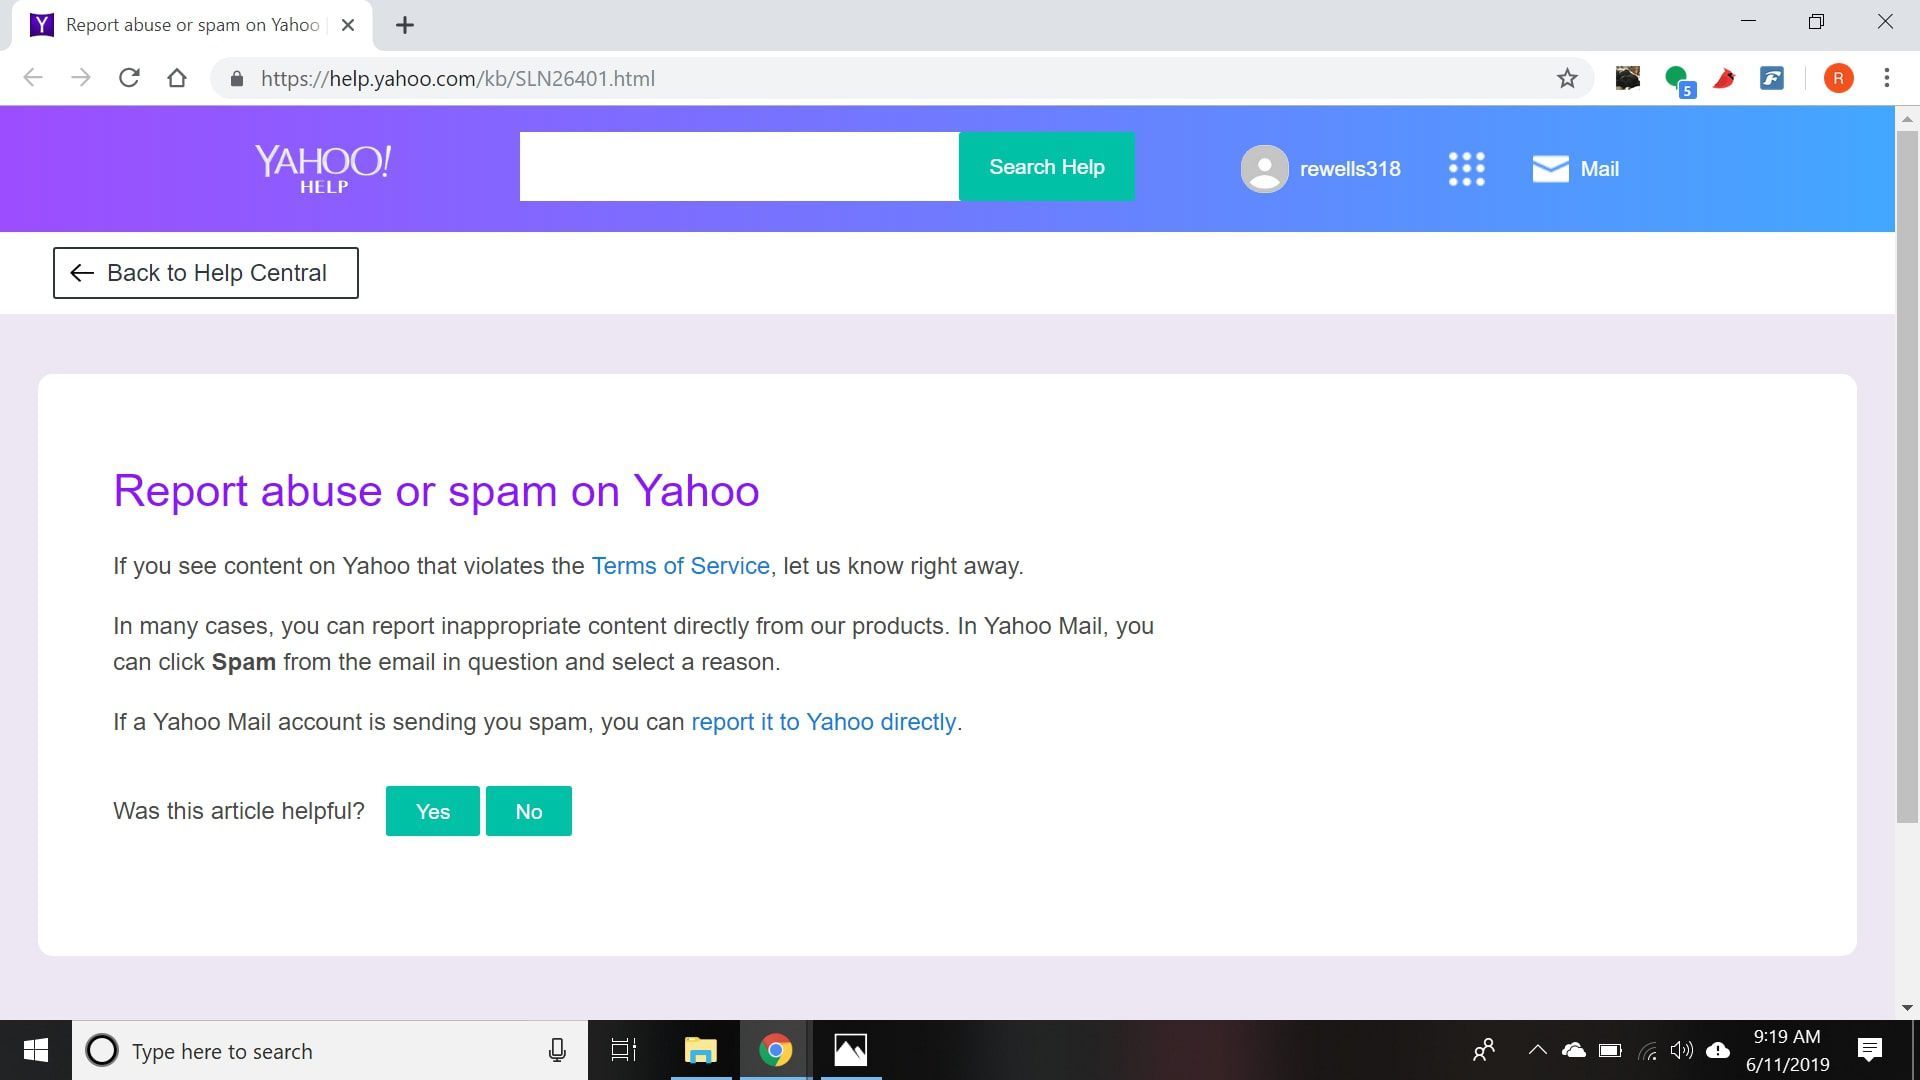 снимок экрана - выберите Сообщить об этом напрямую в Yahoo и введите запрашиваемую информацию на странице Сообщить о злоупотреблении или спаме на странице Yahoo.